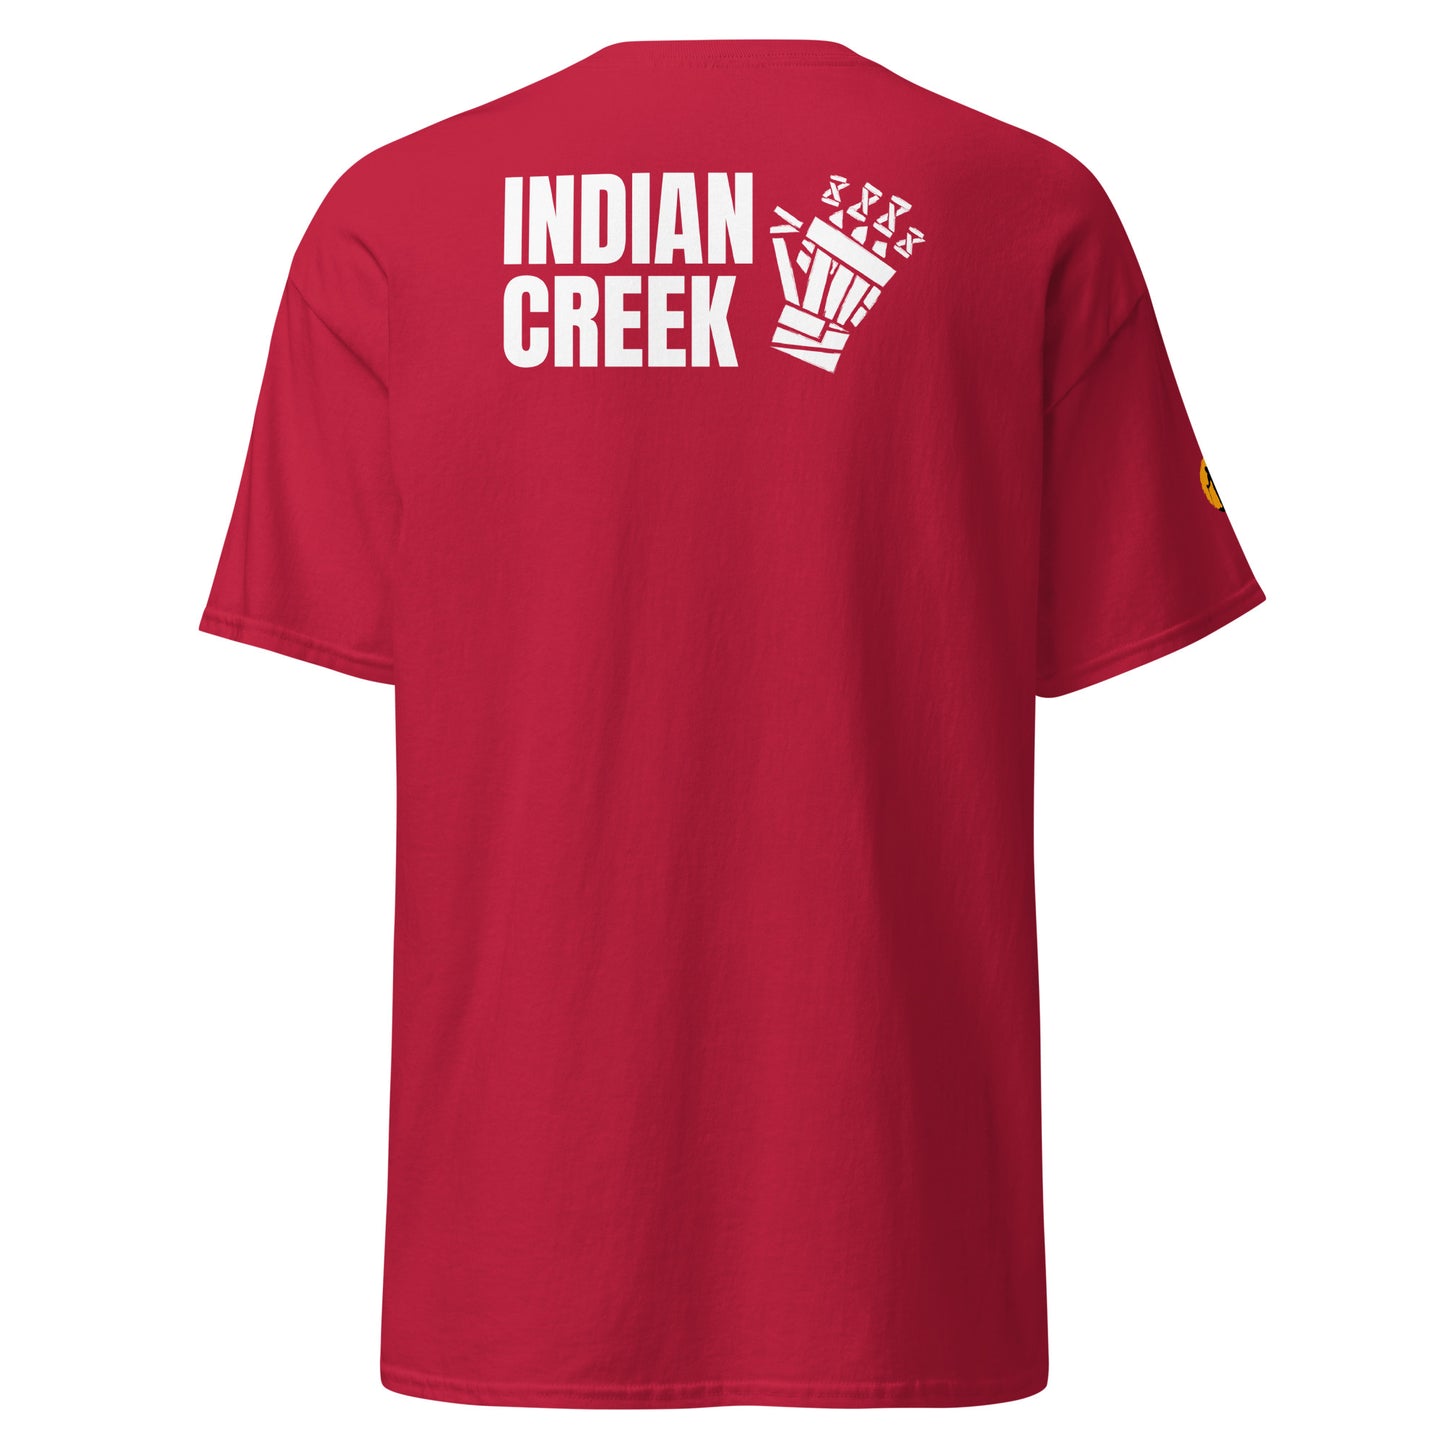 Indian Creek classic tee